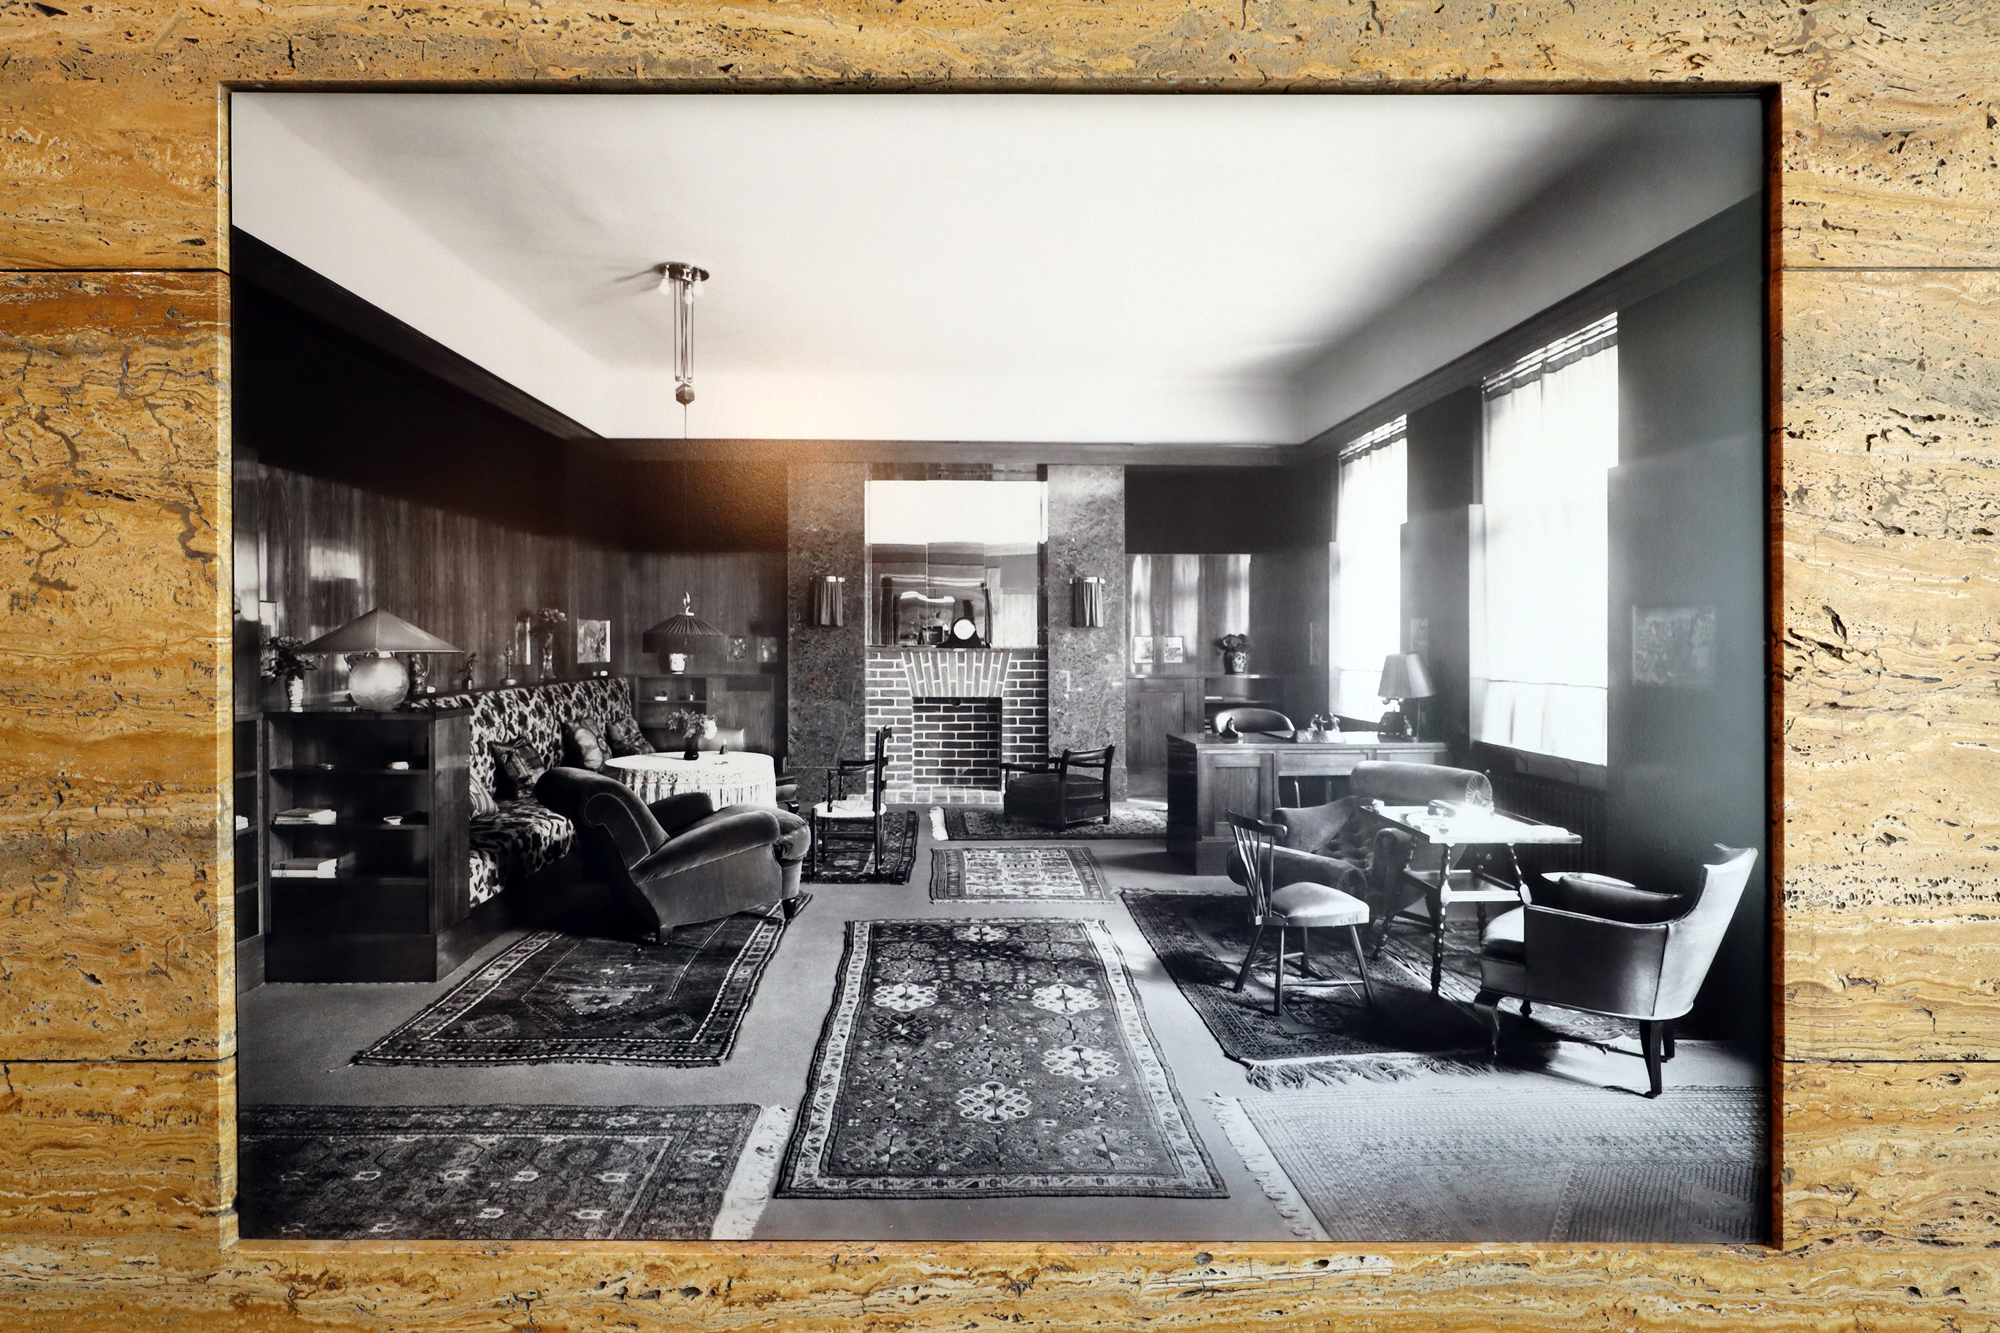 Adolf Loos entwarf die Wohnung 1928 für die Familie Vogl.